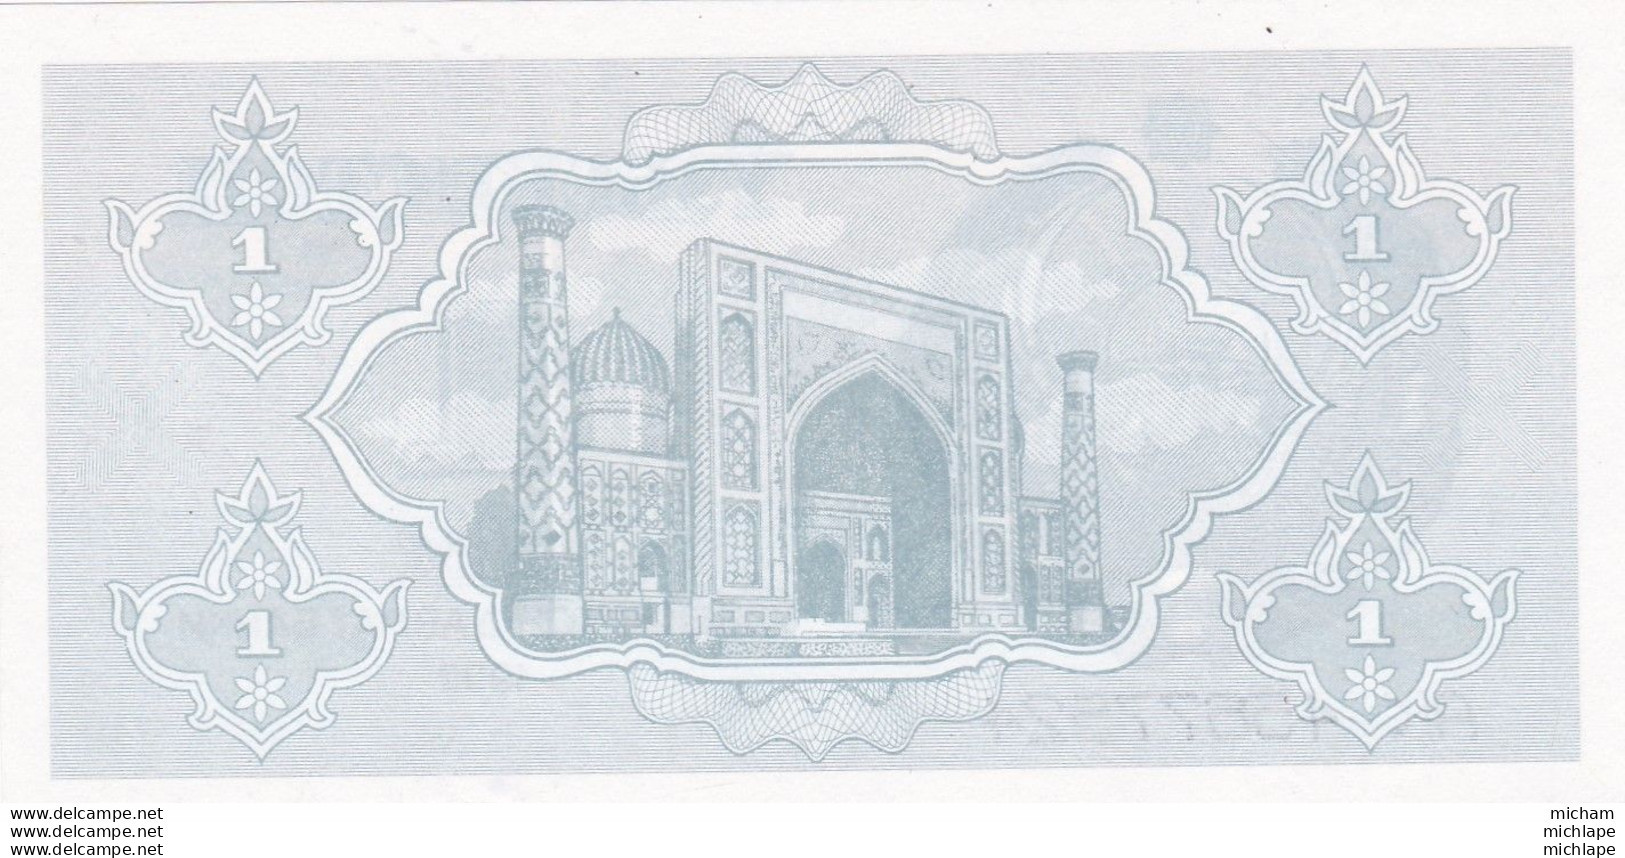 Billet Neuf  Ouzbékistan 1992 - 1 Cym - Ouzbékistan